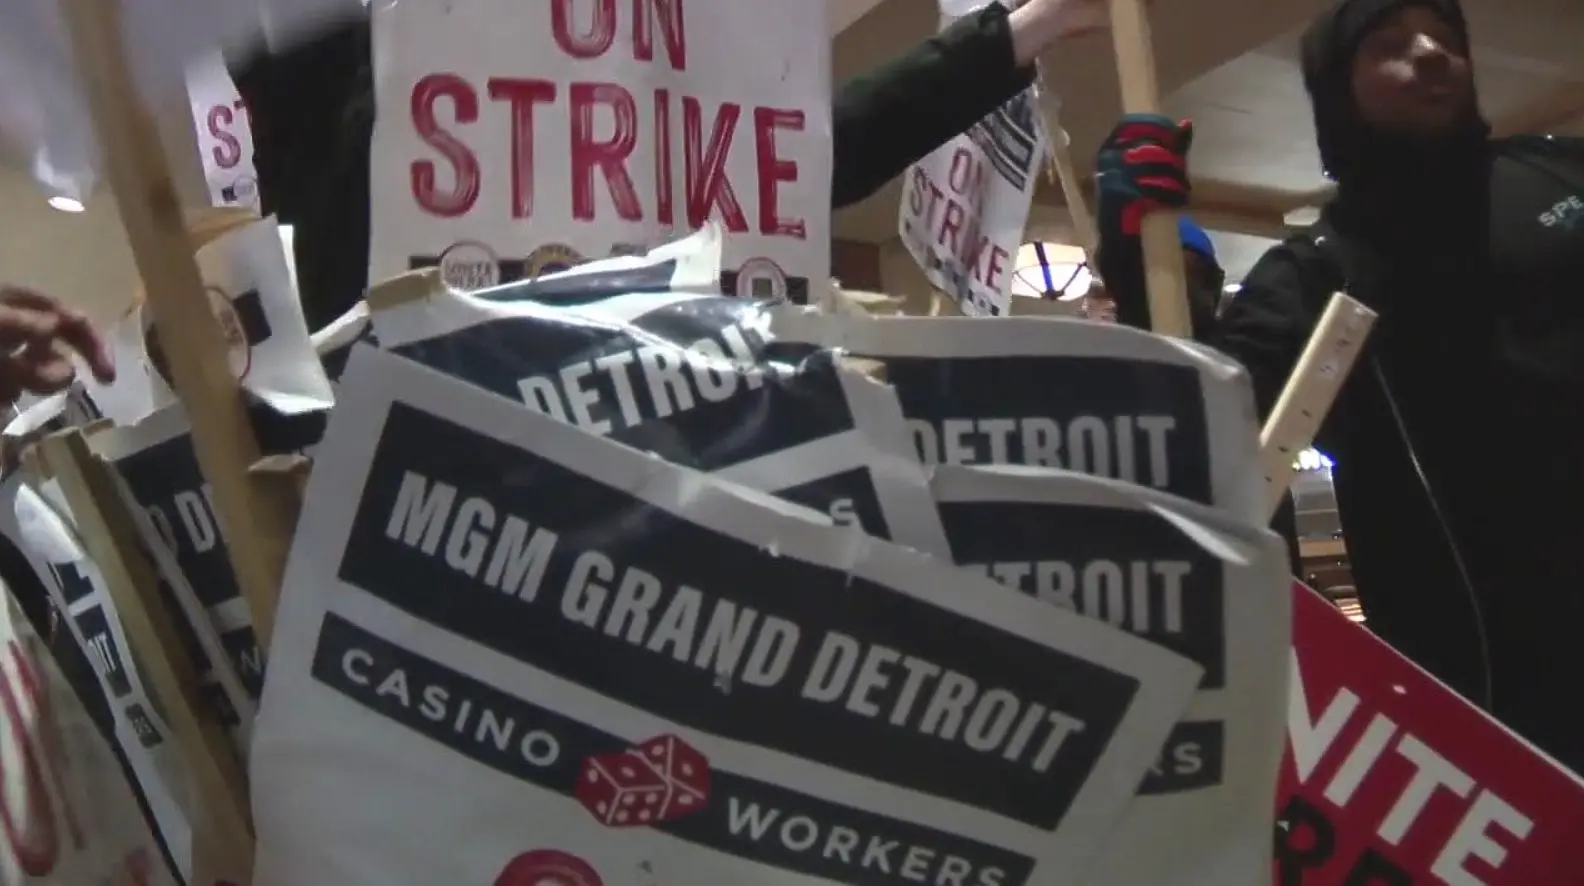 A Detroit Casino Council 32 napos sztrajkot kovetoen tortenelmi oteves jpg